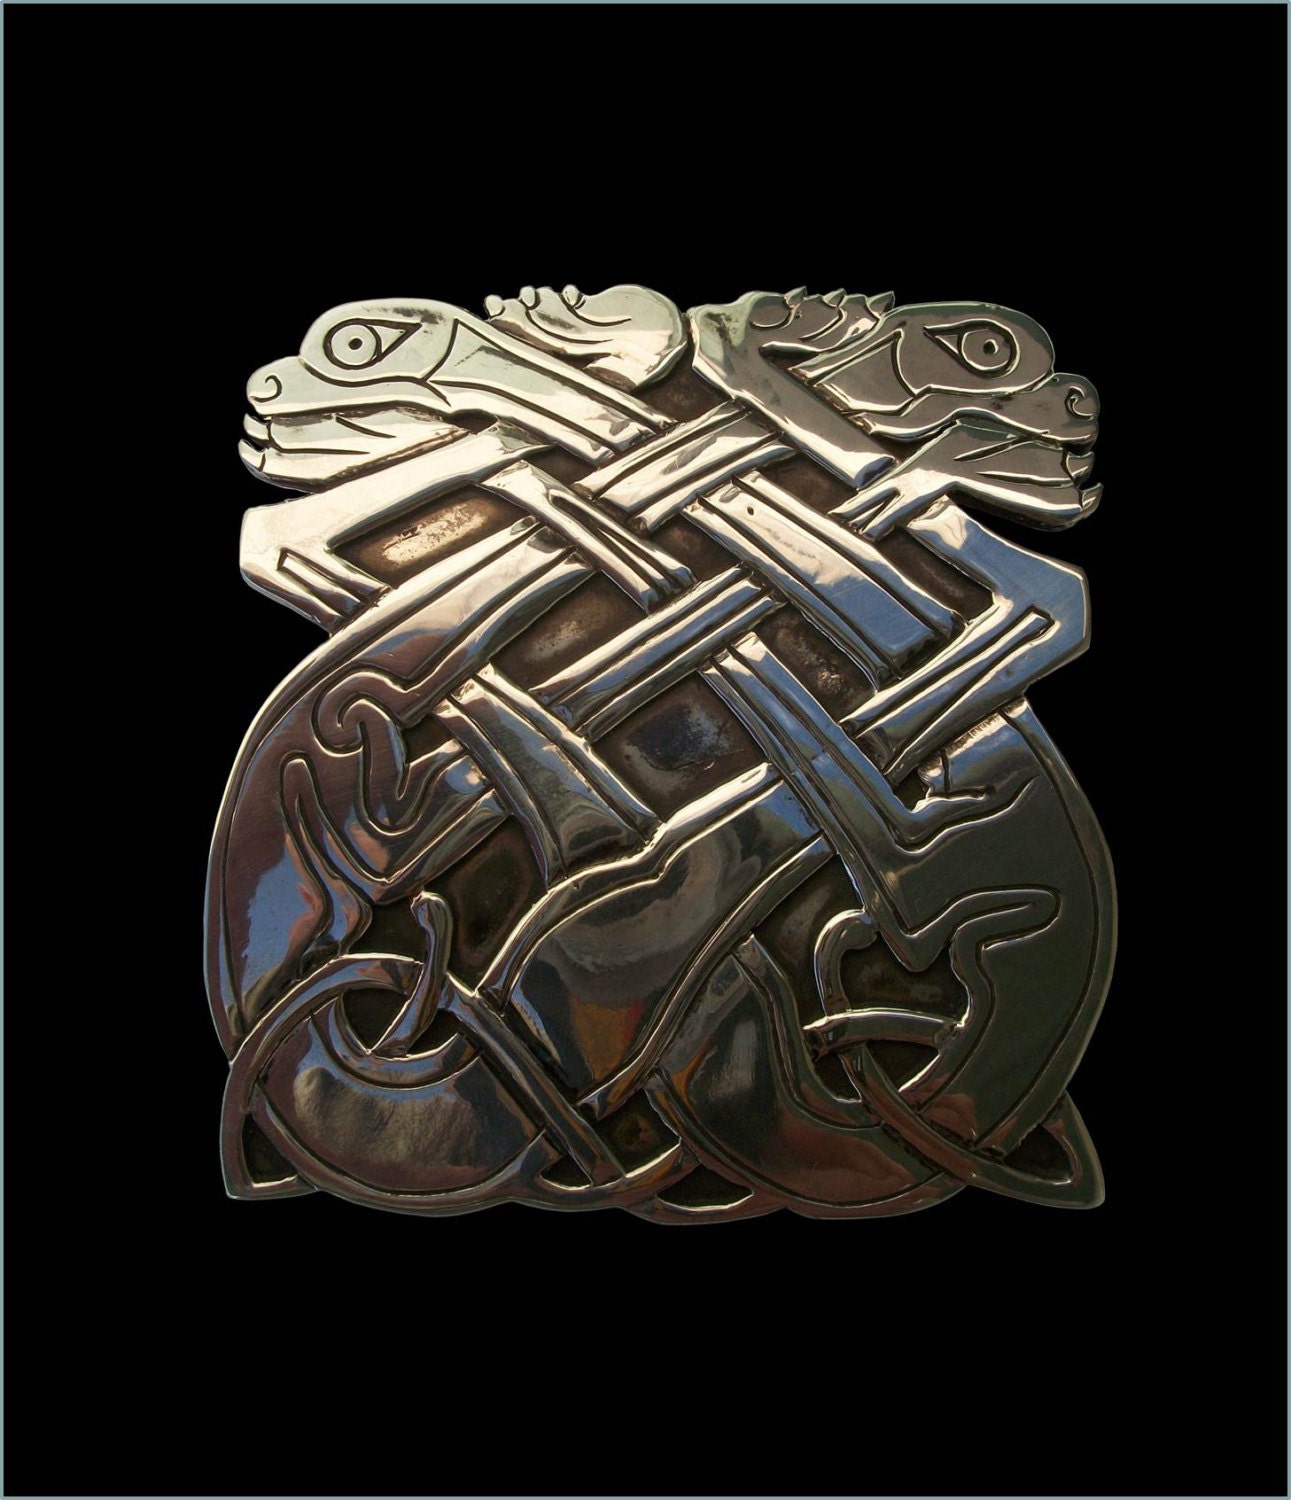 Celtic Belt buckle - Solid Sterling Silver Celtic Dog Belt Buckle inspired Book of Kells